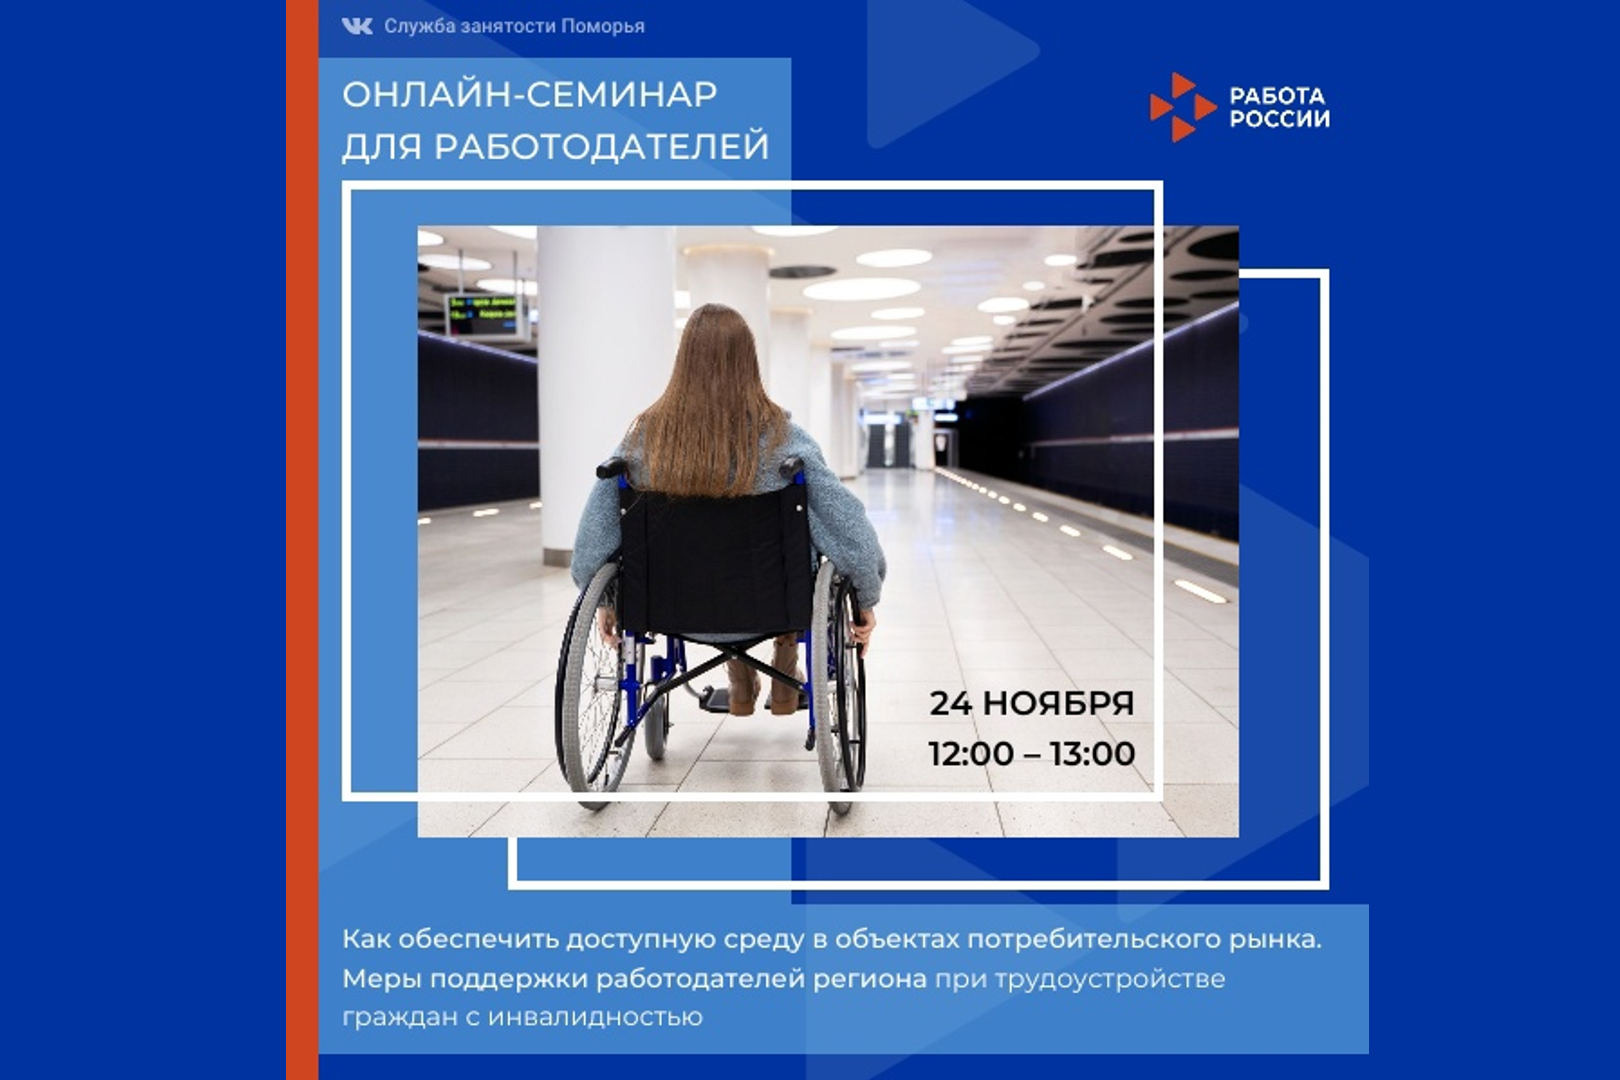 В Архангельске обсудят поддержку работодателей при трудоустройстве граждан с инвалидностью и вопросы доступной среды в объектах торговли и питания